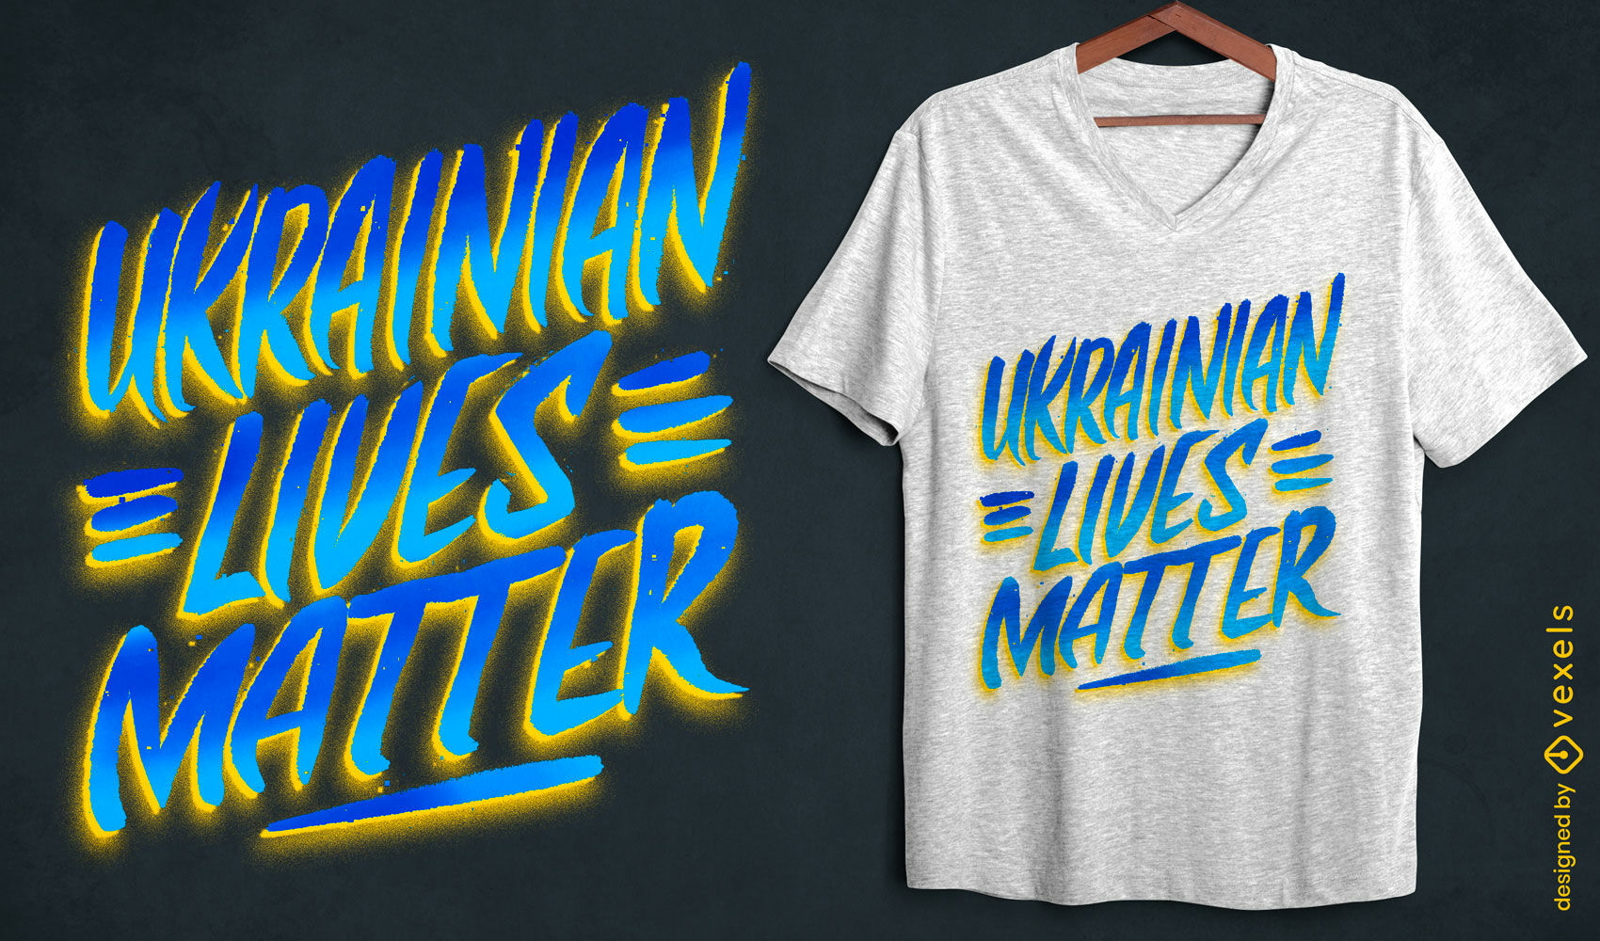 Ukrainian lives matter t-shirt design